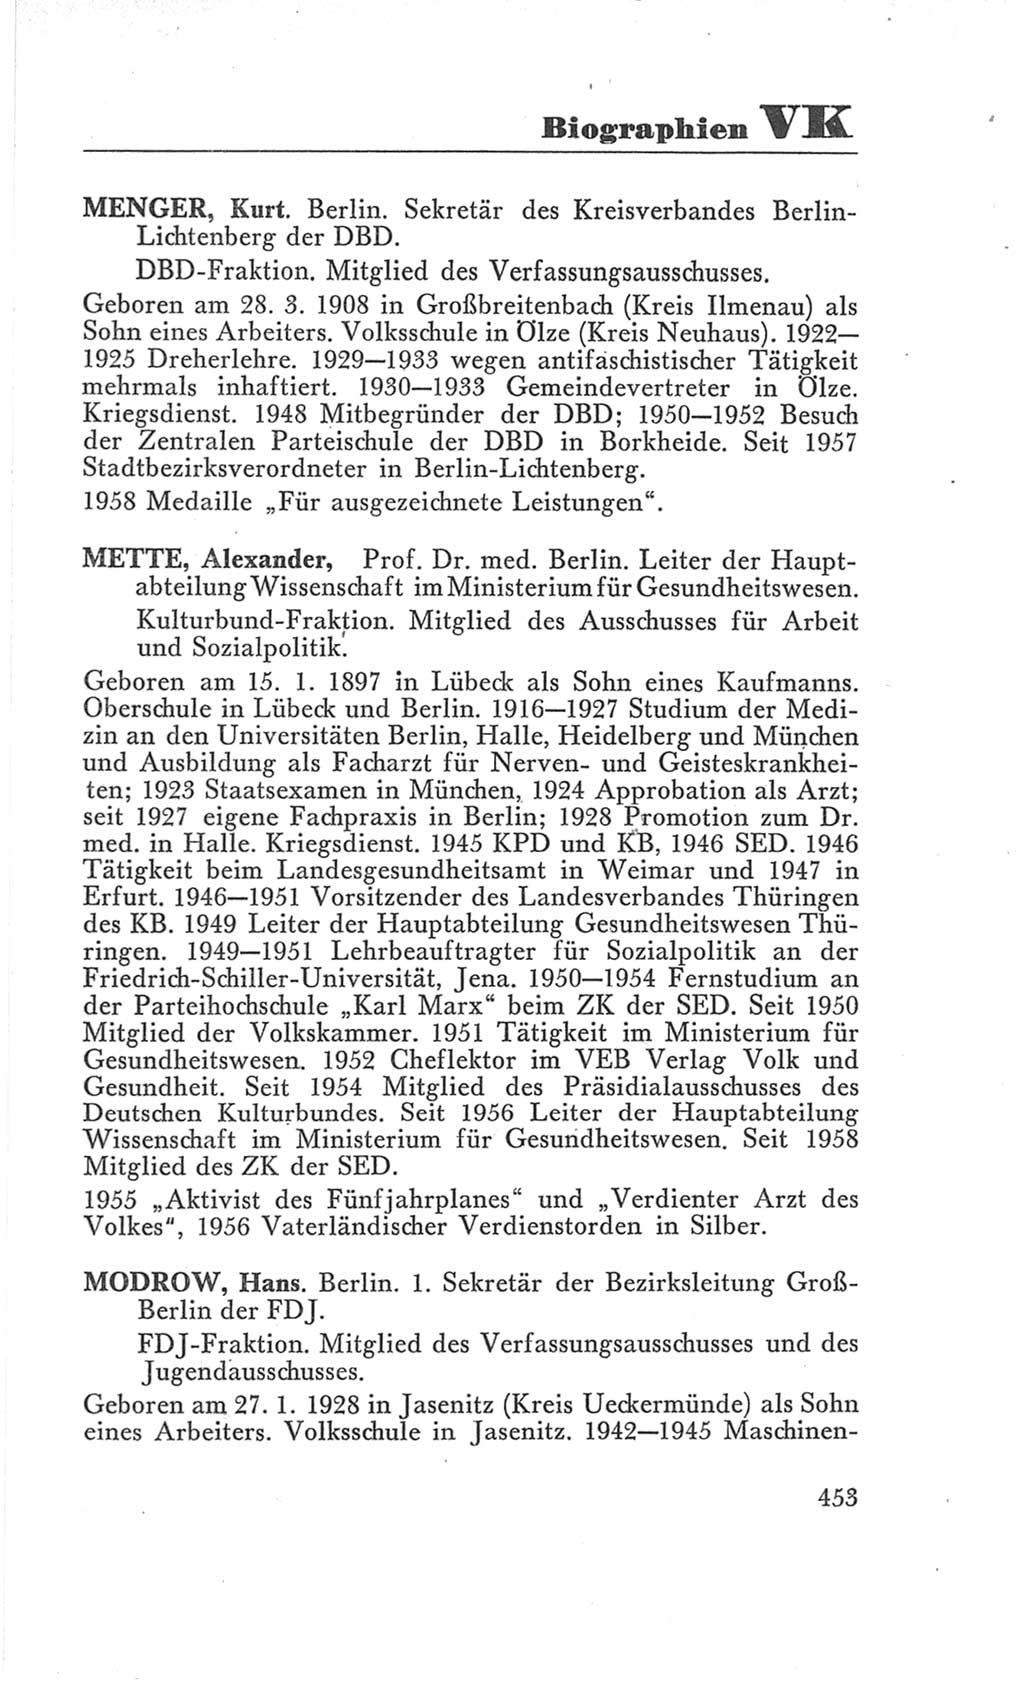 Handbuch der Volkskammer (VK) der Deutschen Demokratischen Republik (DDR), 3. Wahlperiode 1958-1963, Seite 453 (Hdb. VK. DDR 3. WP. 1958-1963, S. 453)